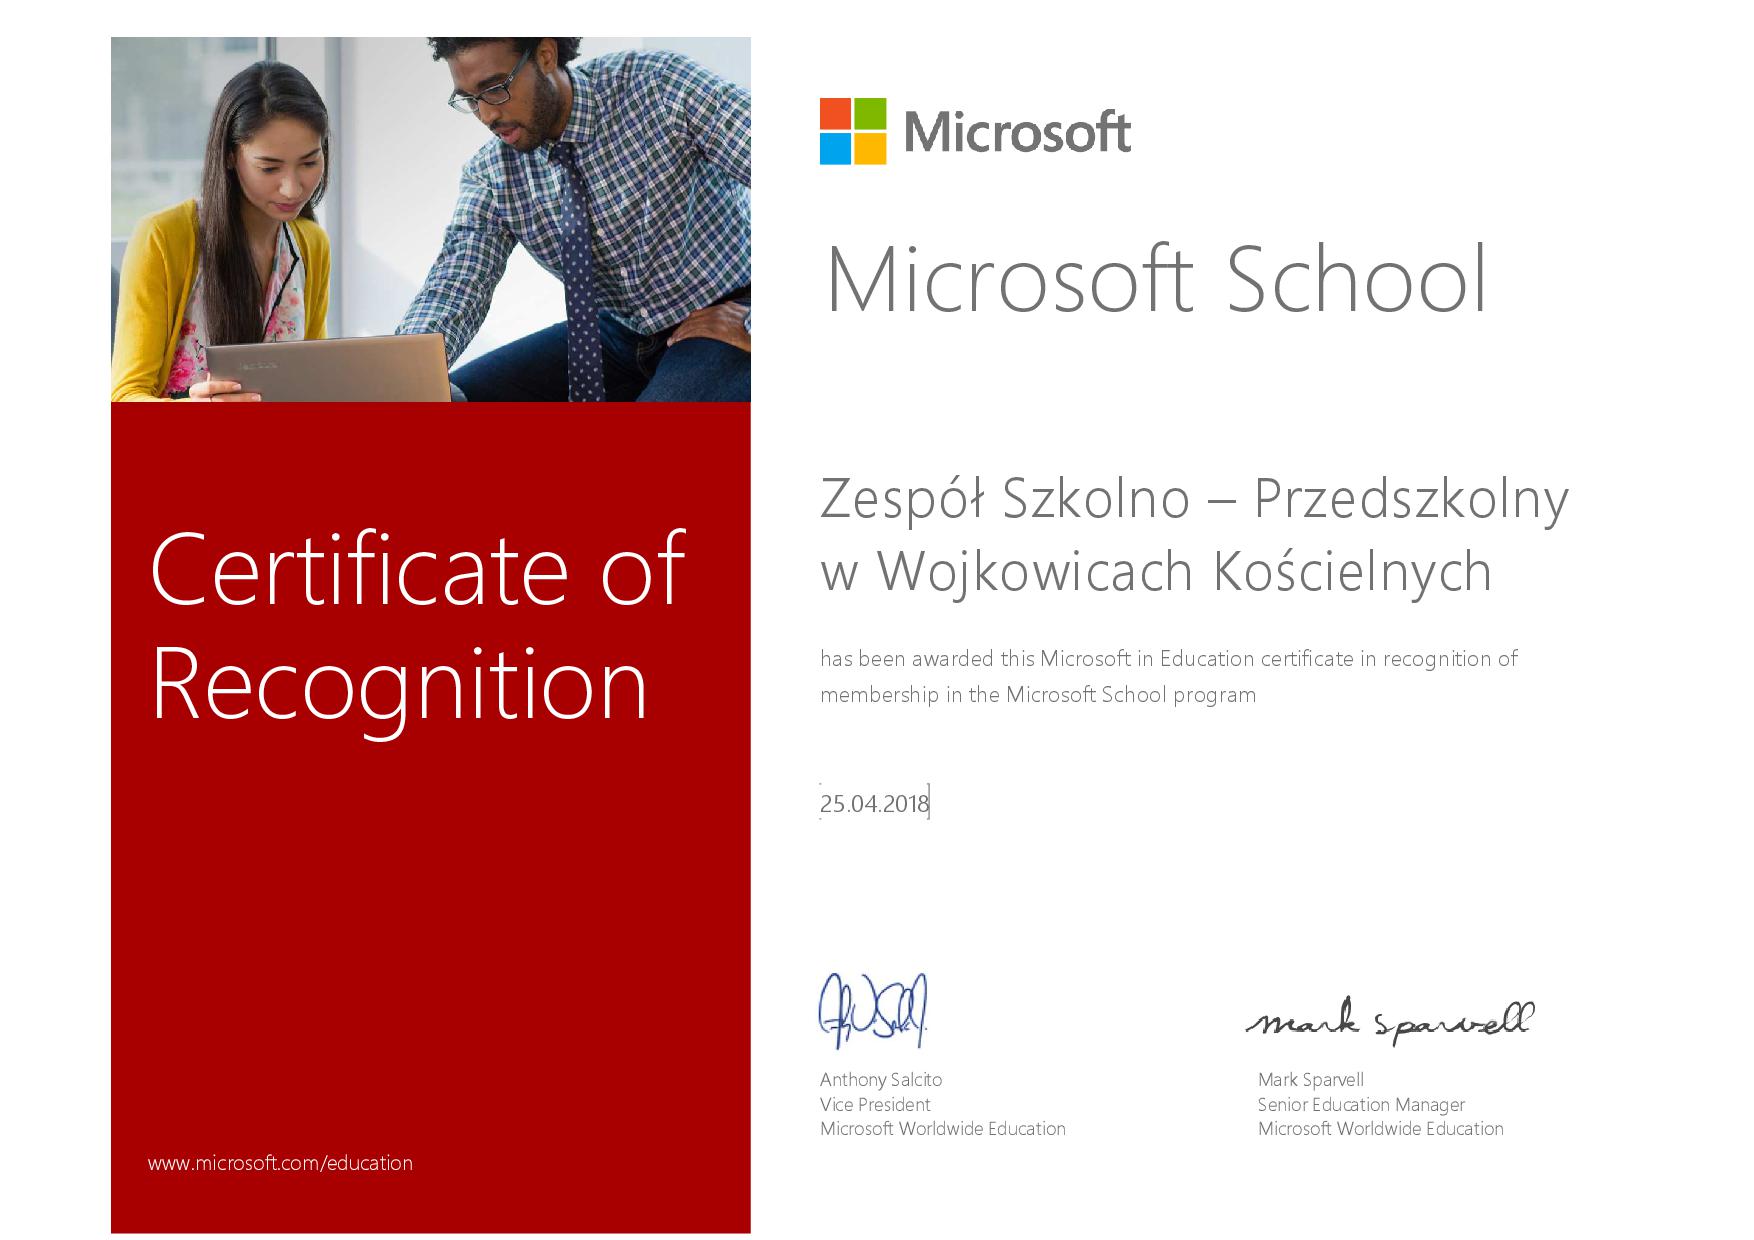 certfikat Microsoft School / Szkoła w Chmurze Microsoft